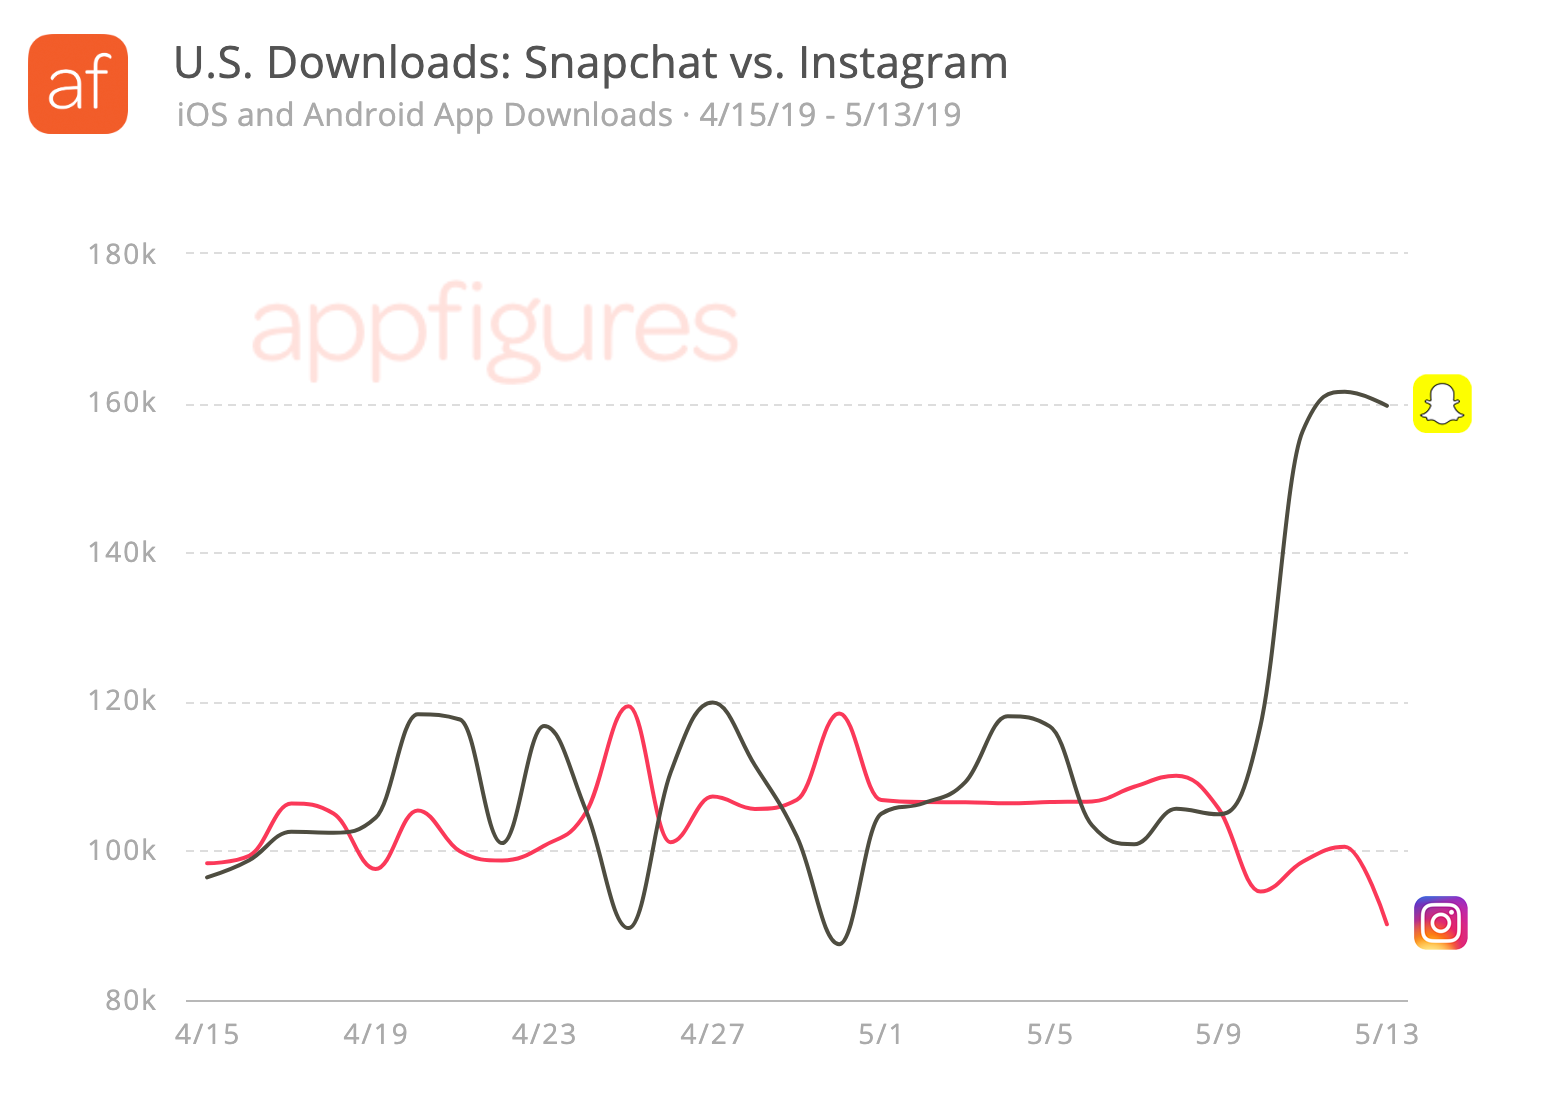 Snapchat downloads vs. Instagram downloads in the U.S.